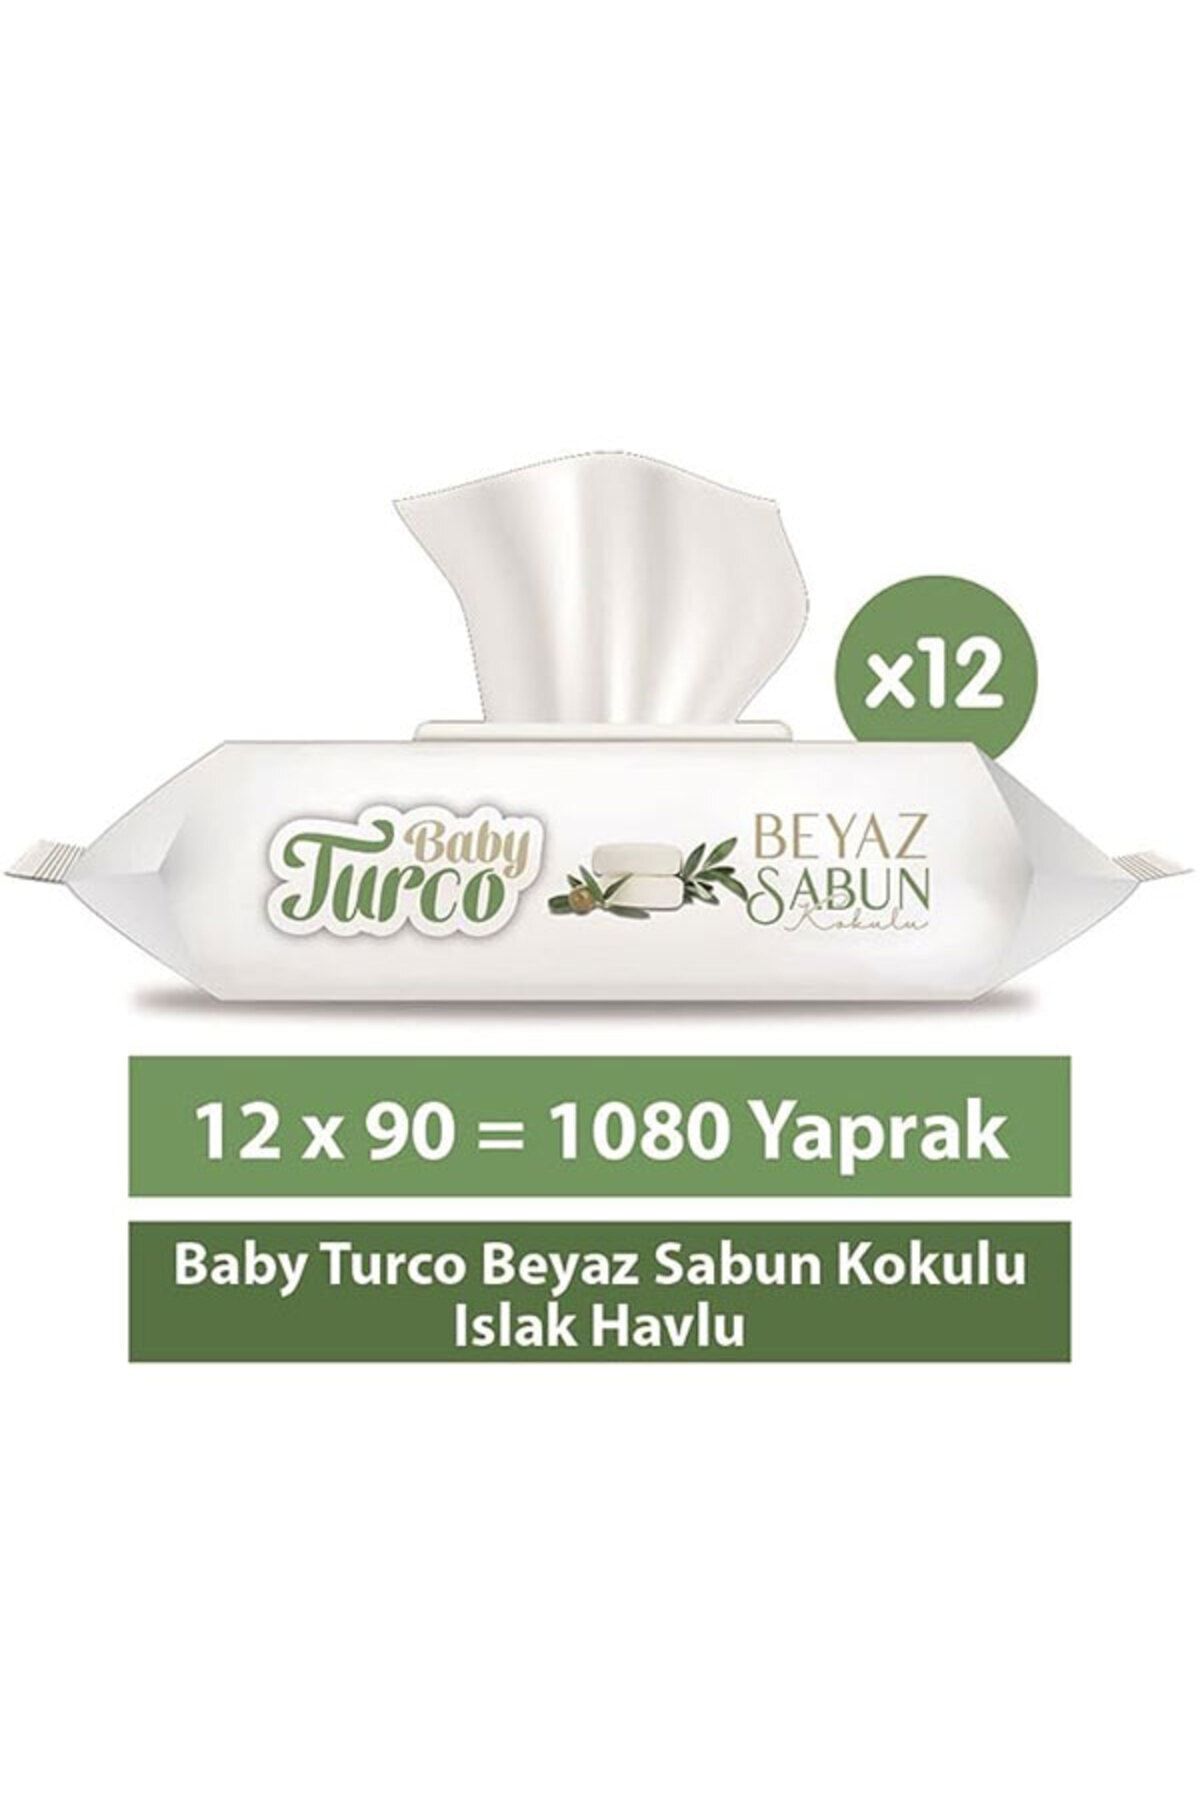 Baby Turco Beyaz Sabun Kokulu Islak Havlu 12x90